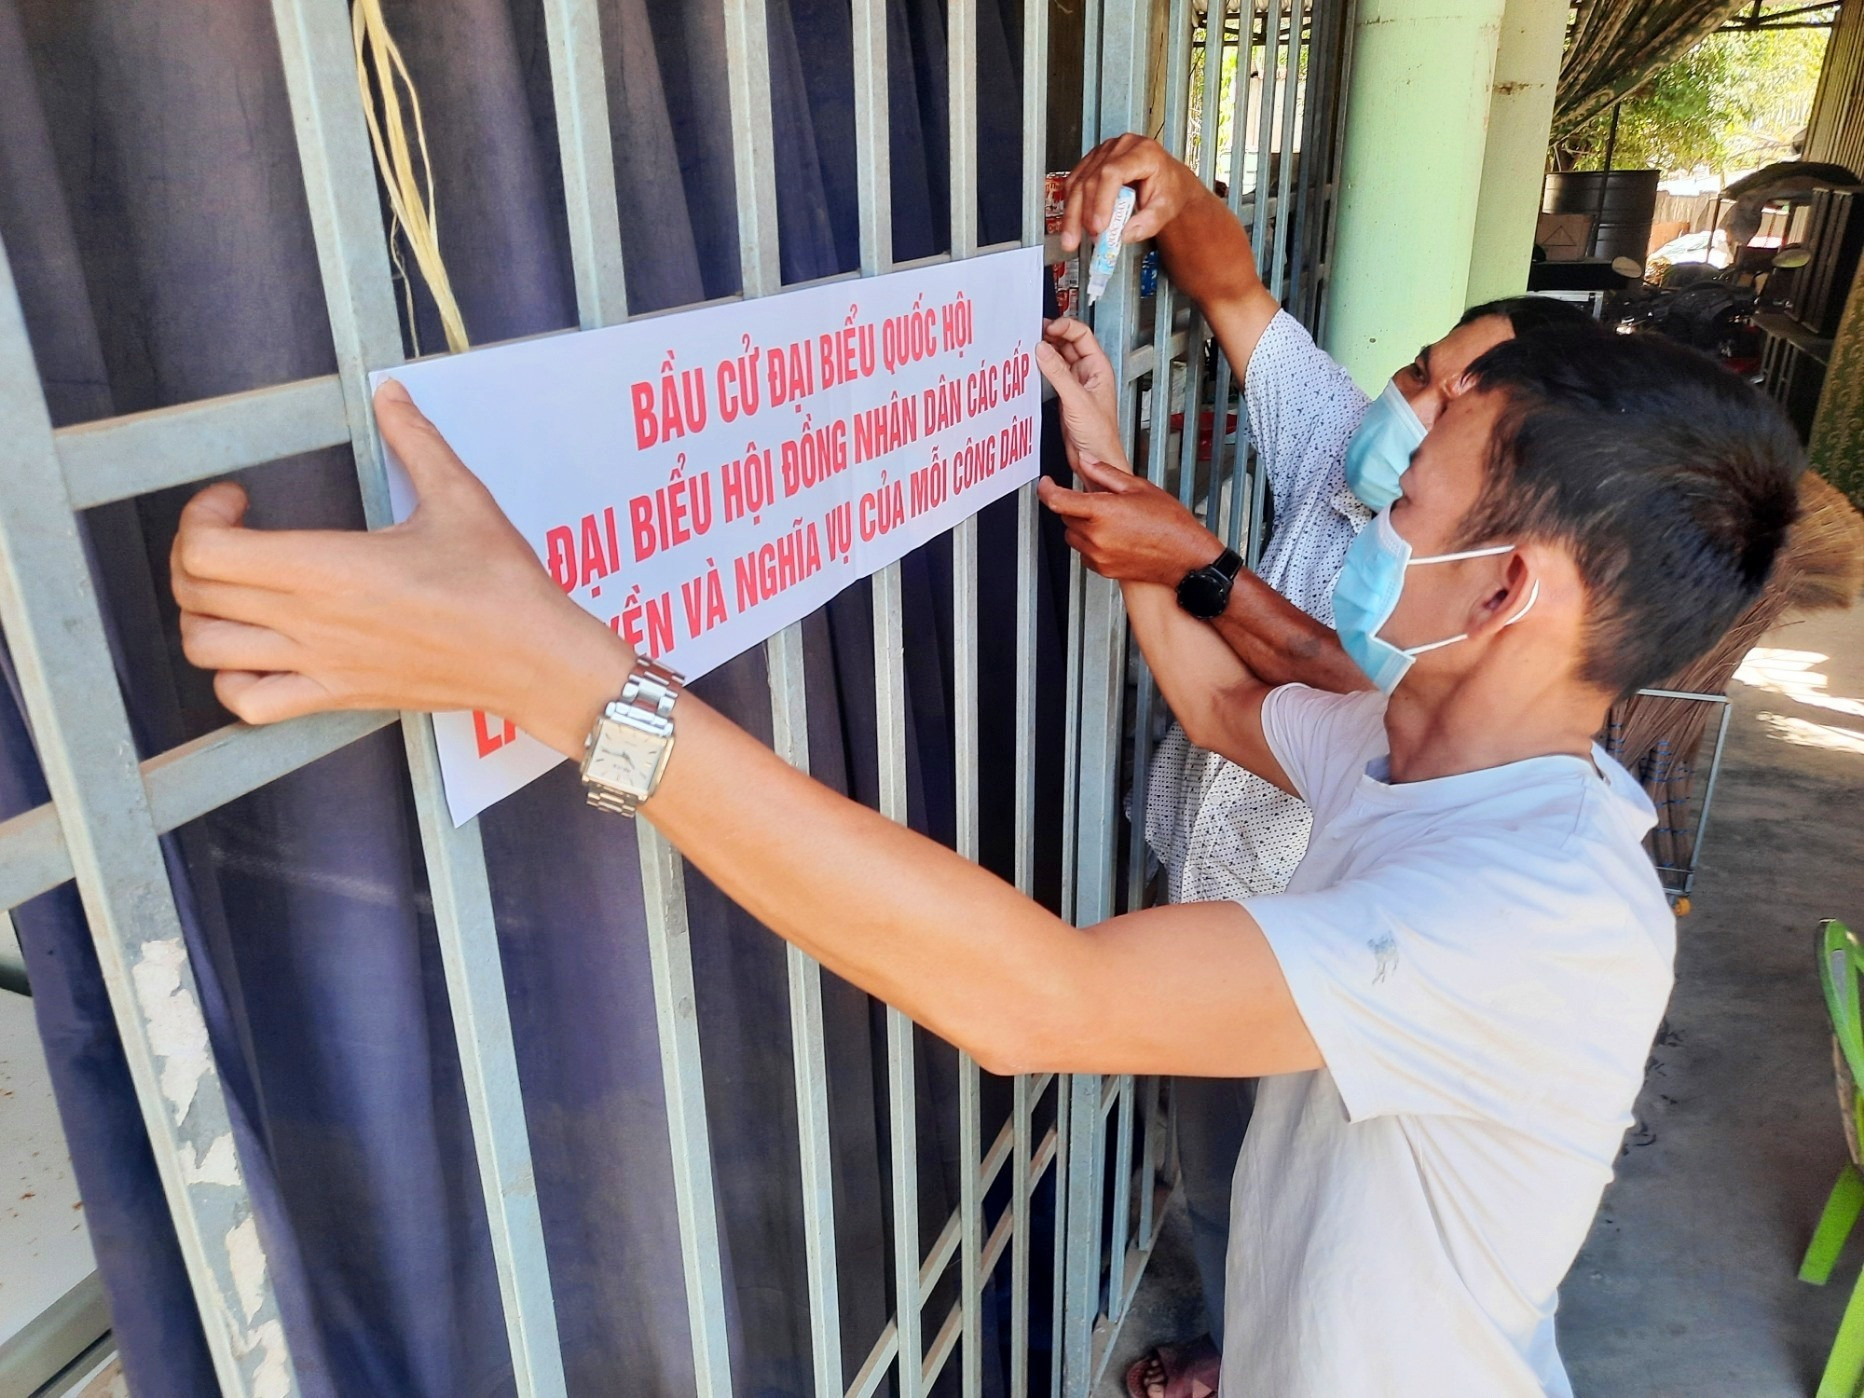 Dán áp phích tuyên truyền bầu cử tại các khu vực có nhiều người đến là cách làm hay của thôn Đại Đồng. Ảnh: Đ.C